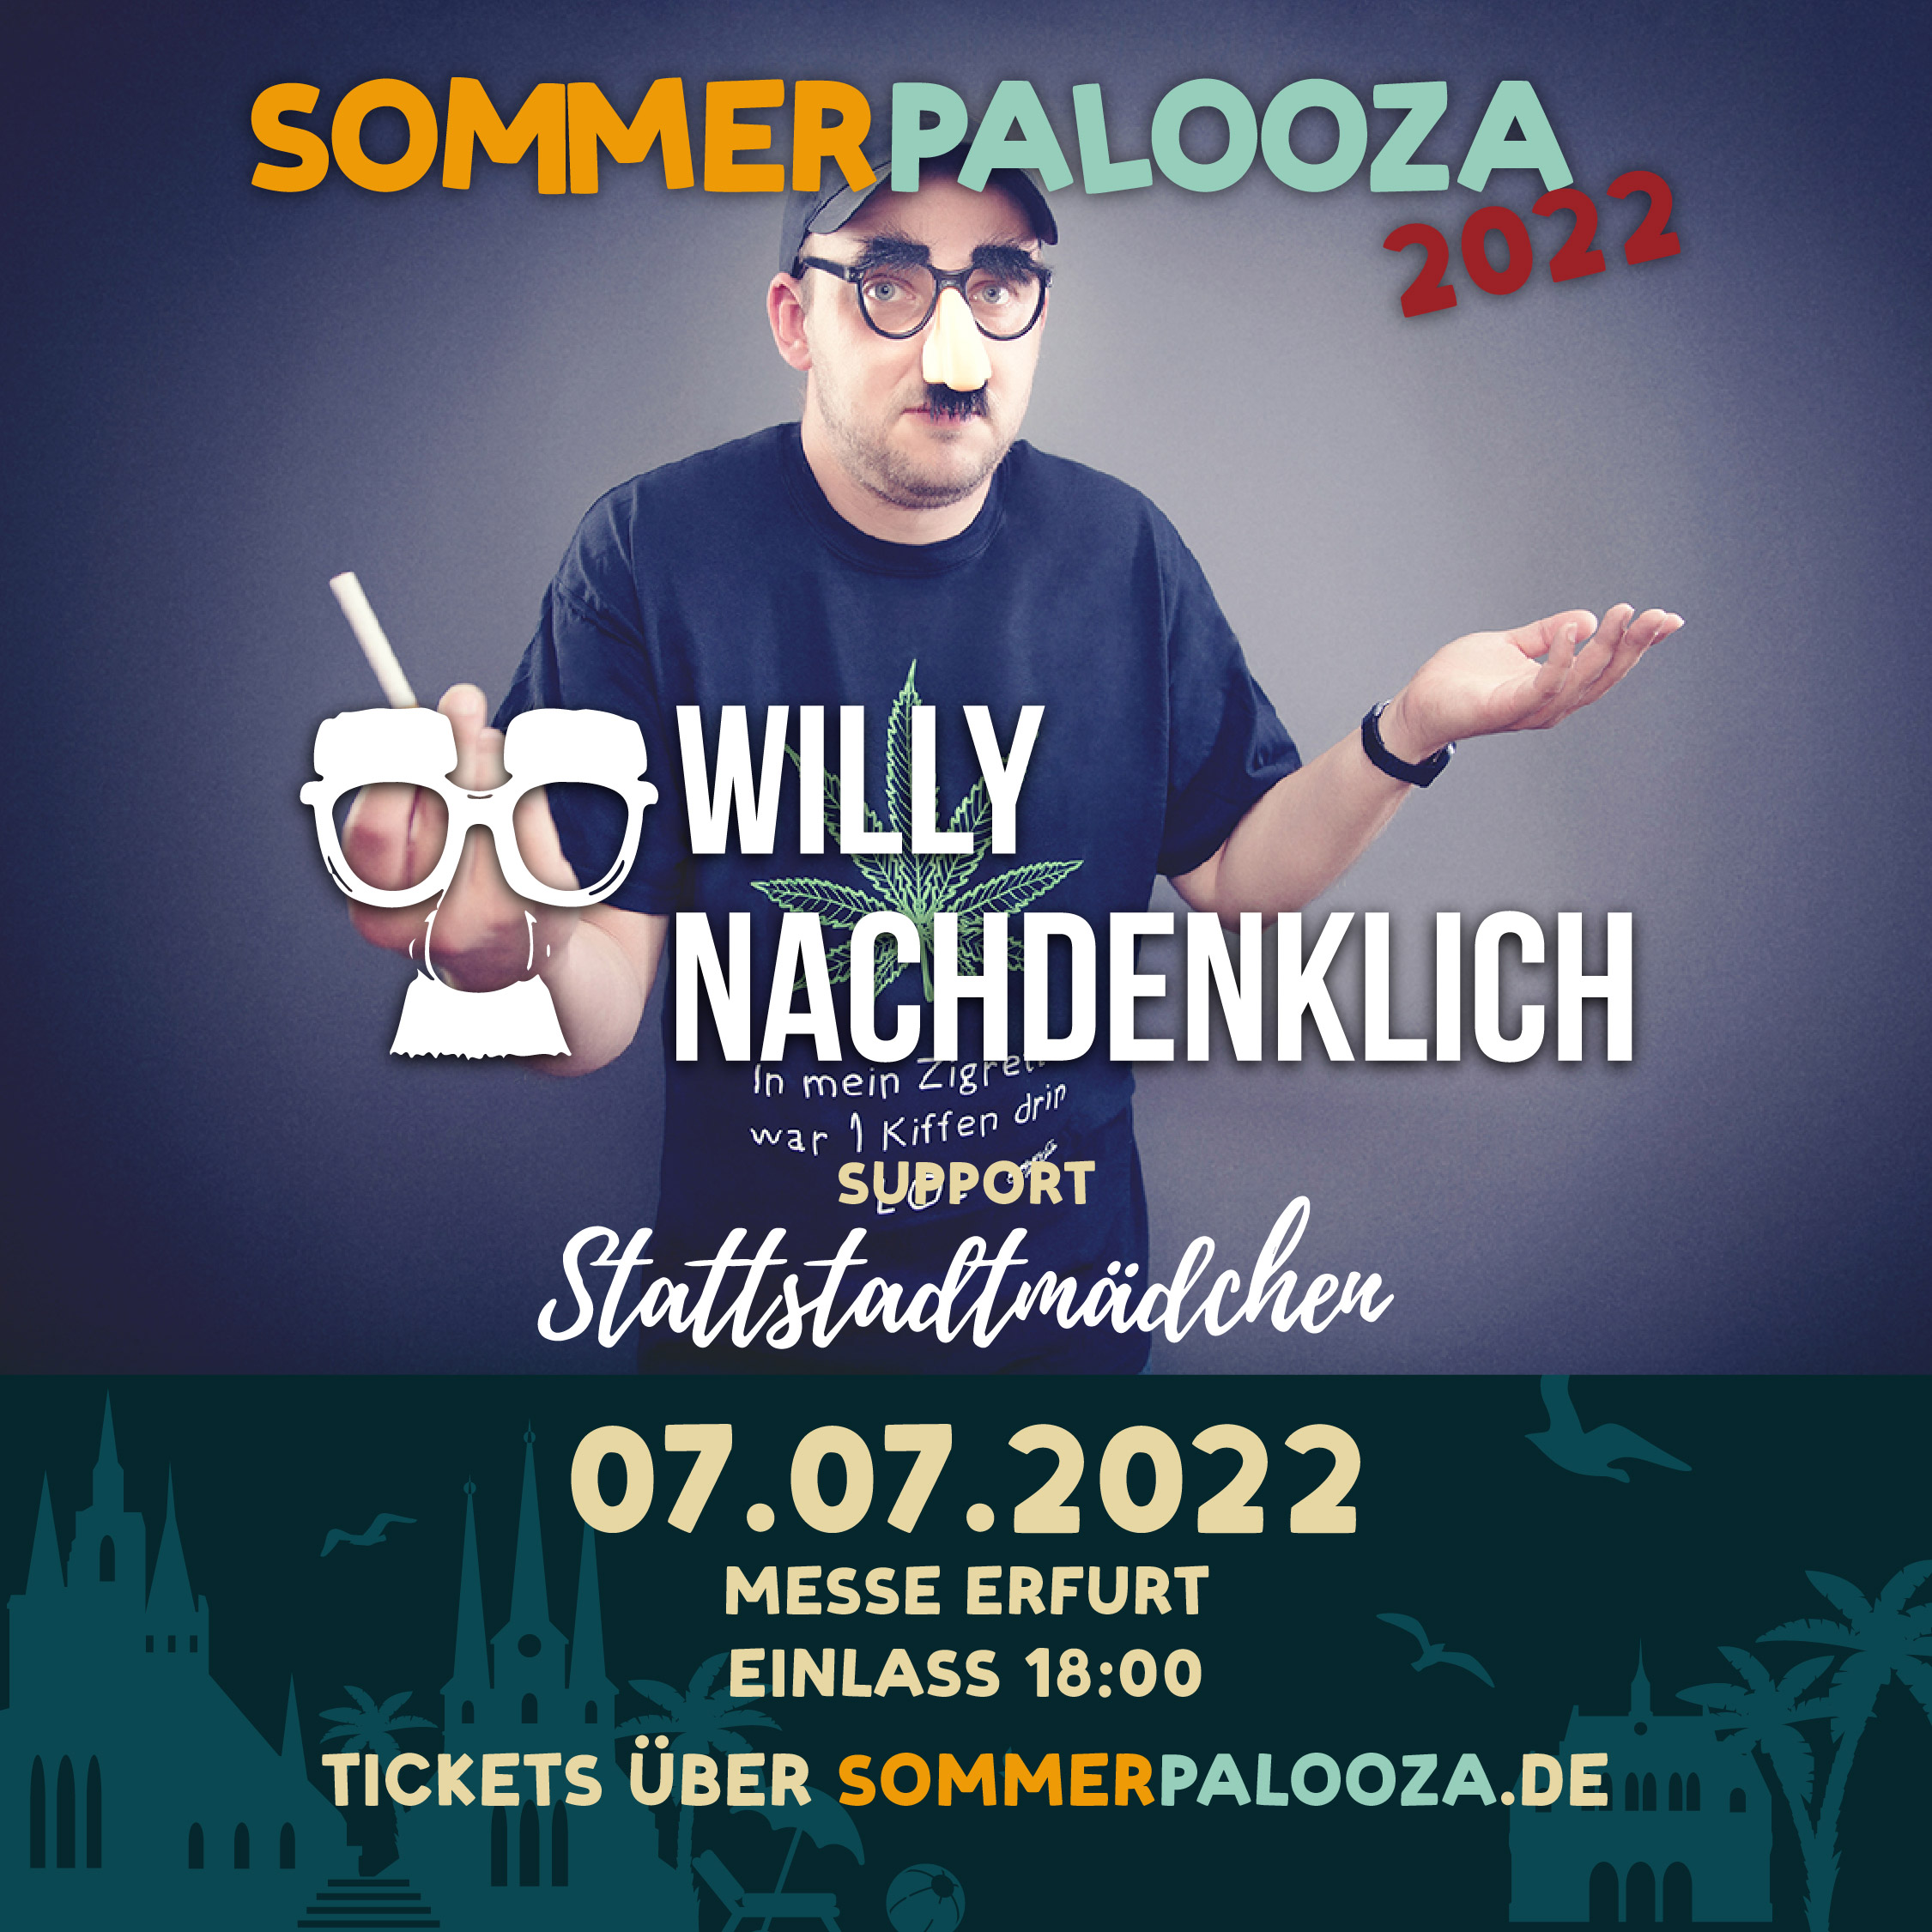 Willy Nachdenklich Stattstadtmädchen Sommerpalooza 2022 Festival